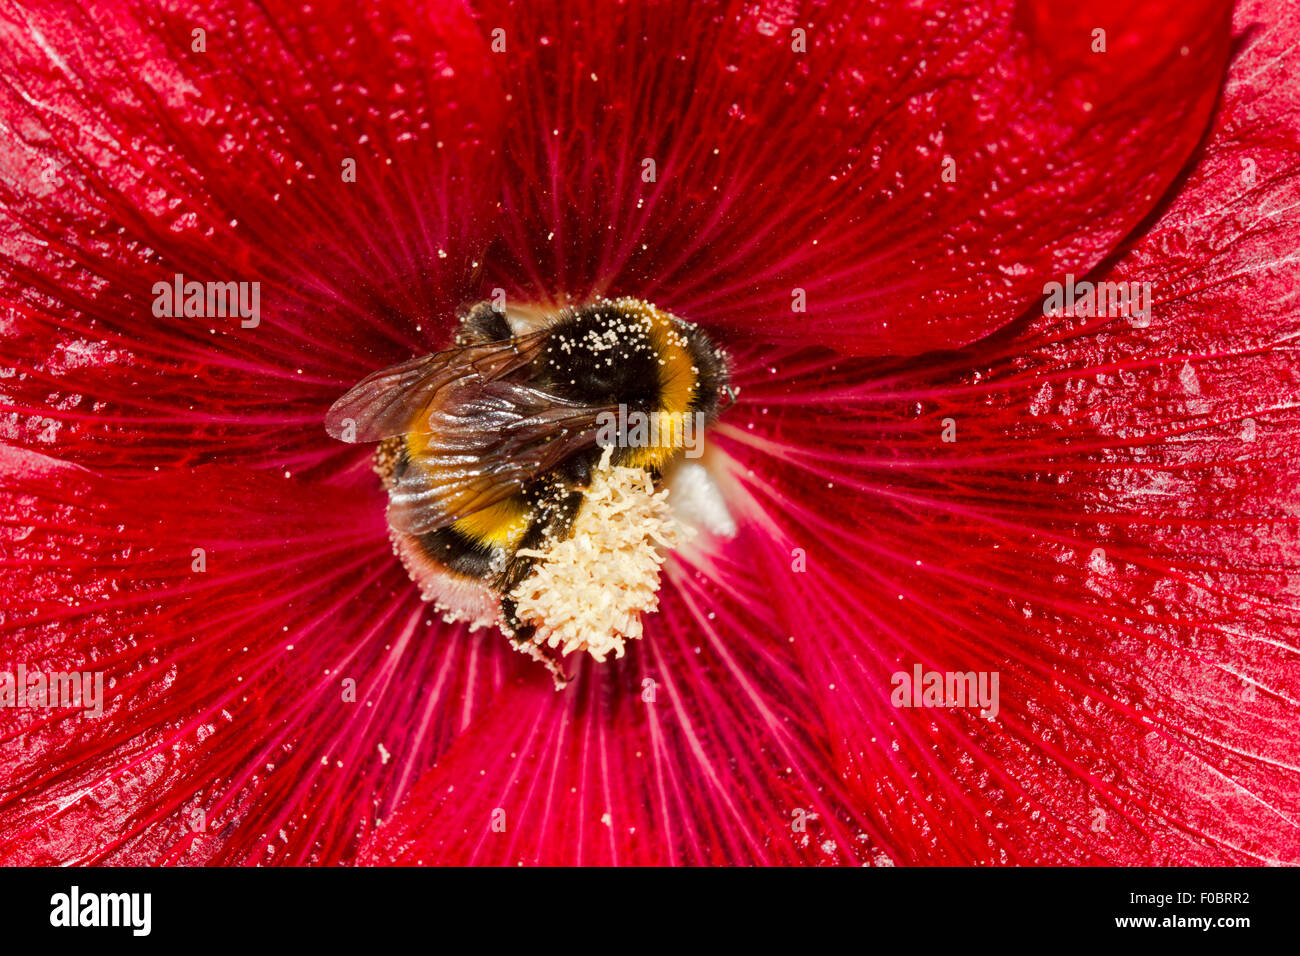 Gran masa de abejorros (Bombus terrestris), cubiertos de polen en la flor de una red común (Alcea hollyhock rosea) Foto de stock